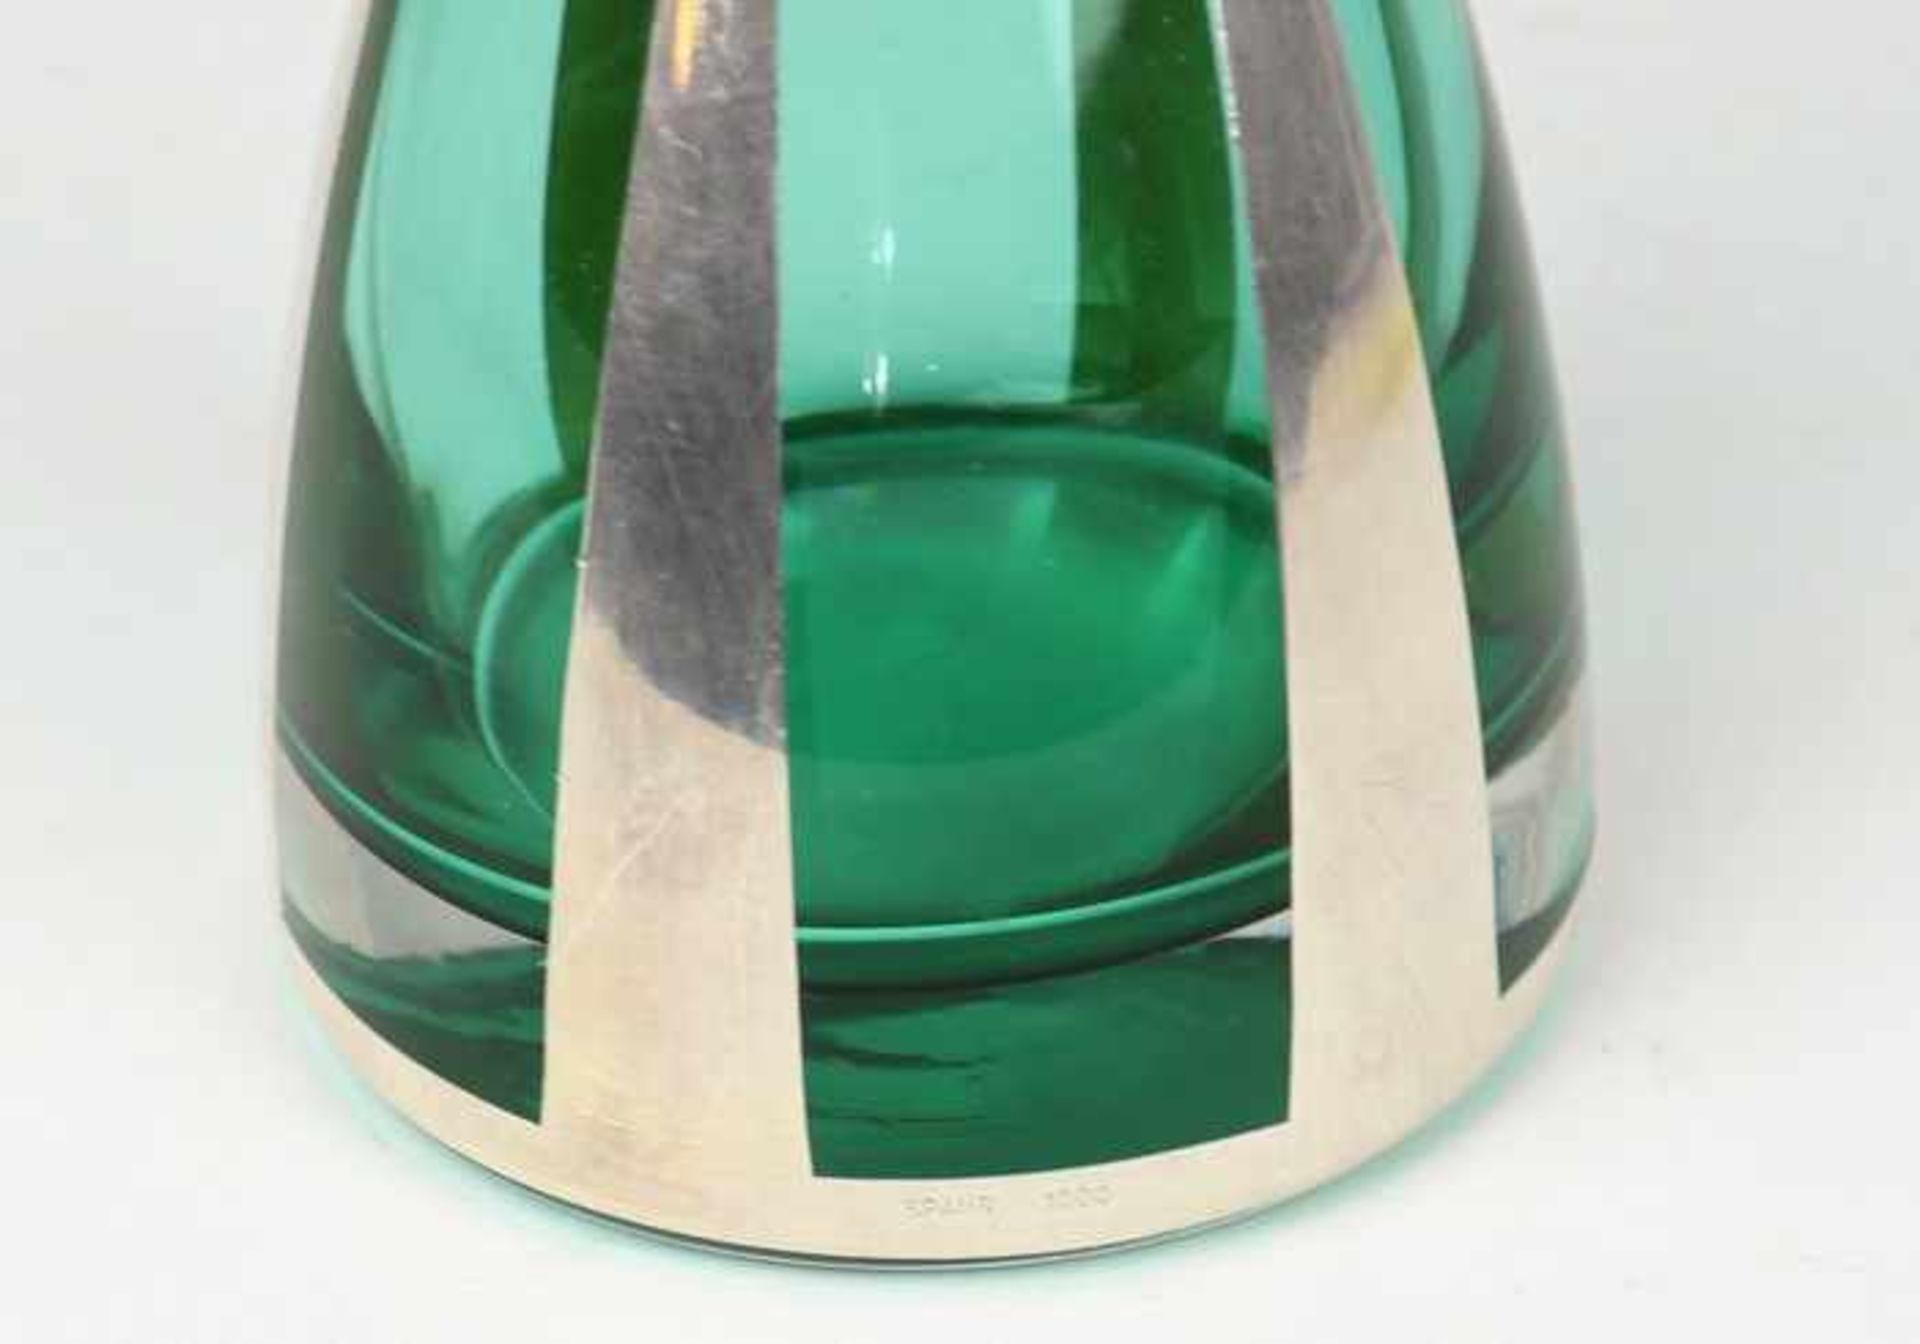 Spahr, Friedrich Wilhelm - Ziervaseum 1950, Si 1000, punz. Spahr, grünes Glas m. Si-Overlay, - Bild 2 aus 2